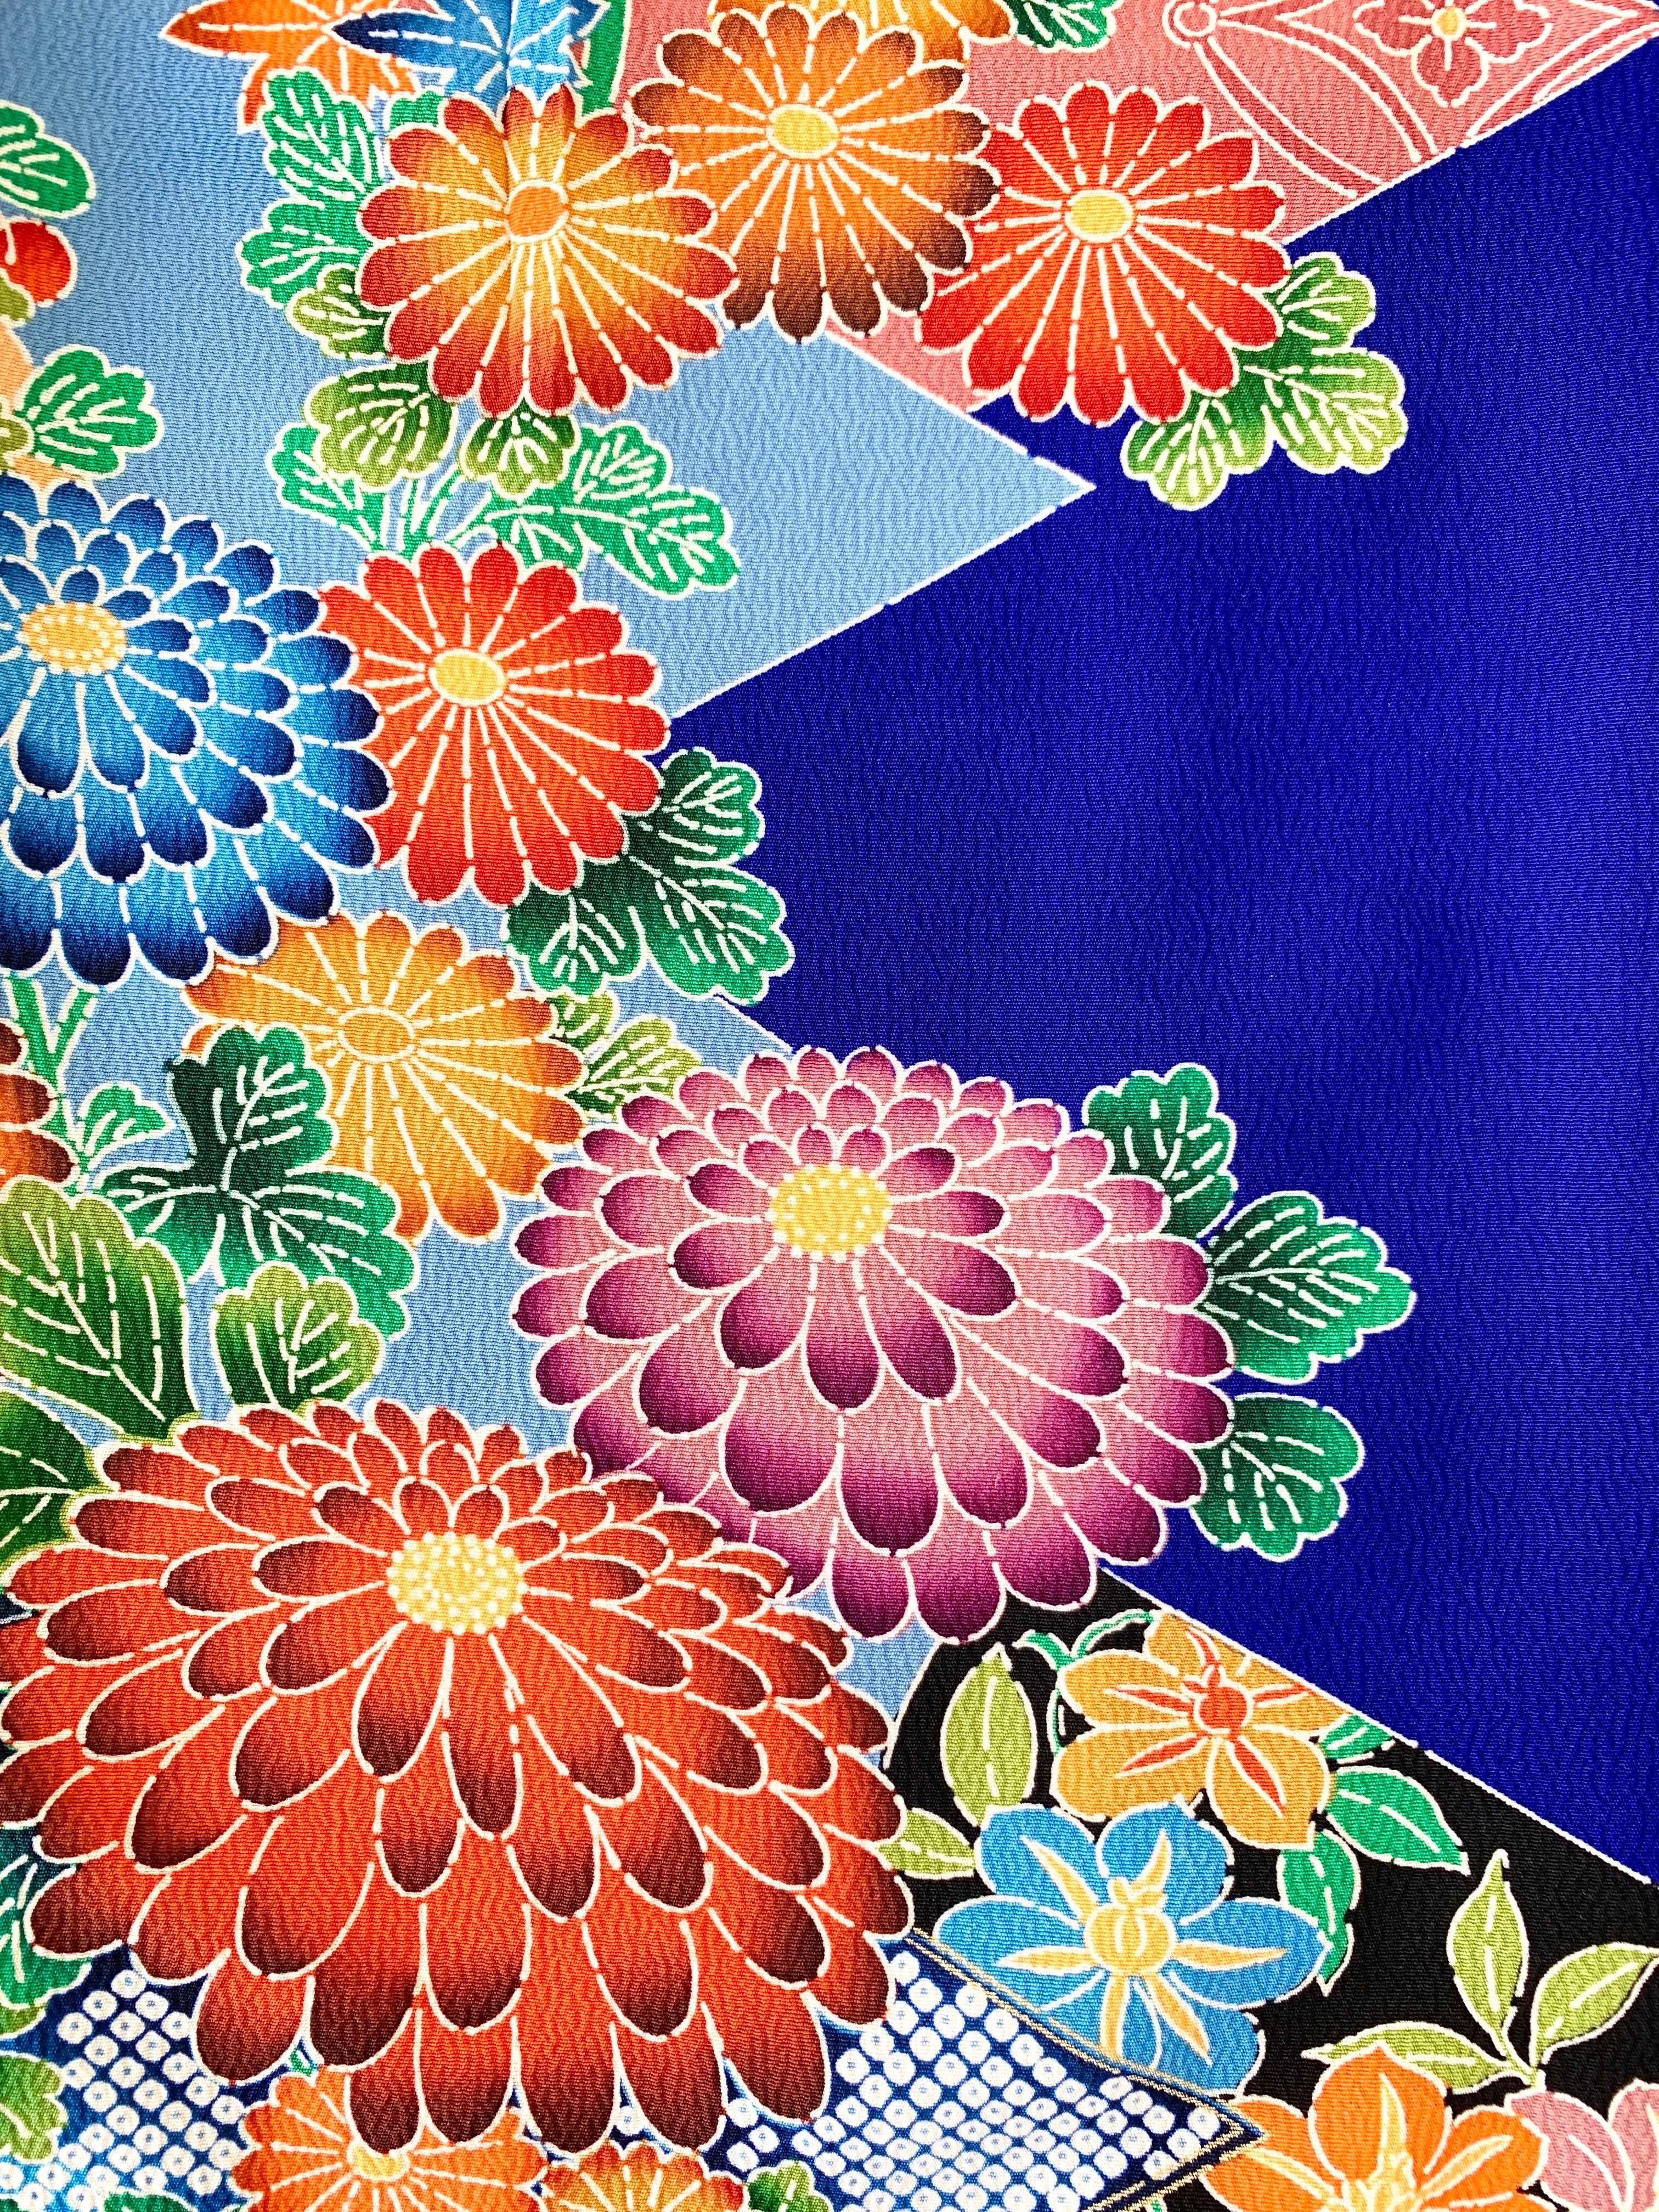 CHEMISE KIMONO ALOHA 'COLOURFUL FLOWERS A' AH100235 - KIMONO ALOHA SHIRT SPECIALTY SHOP